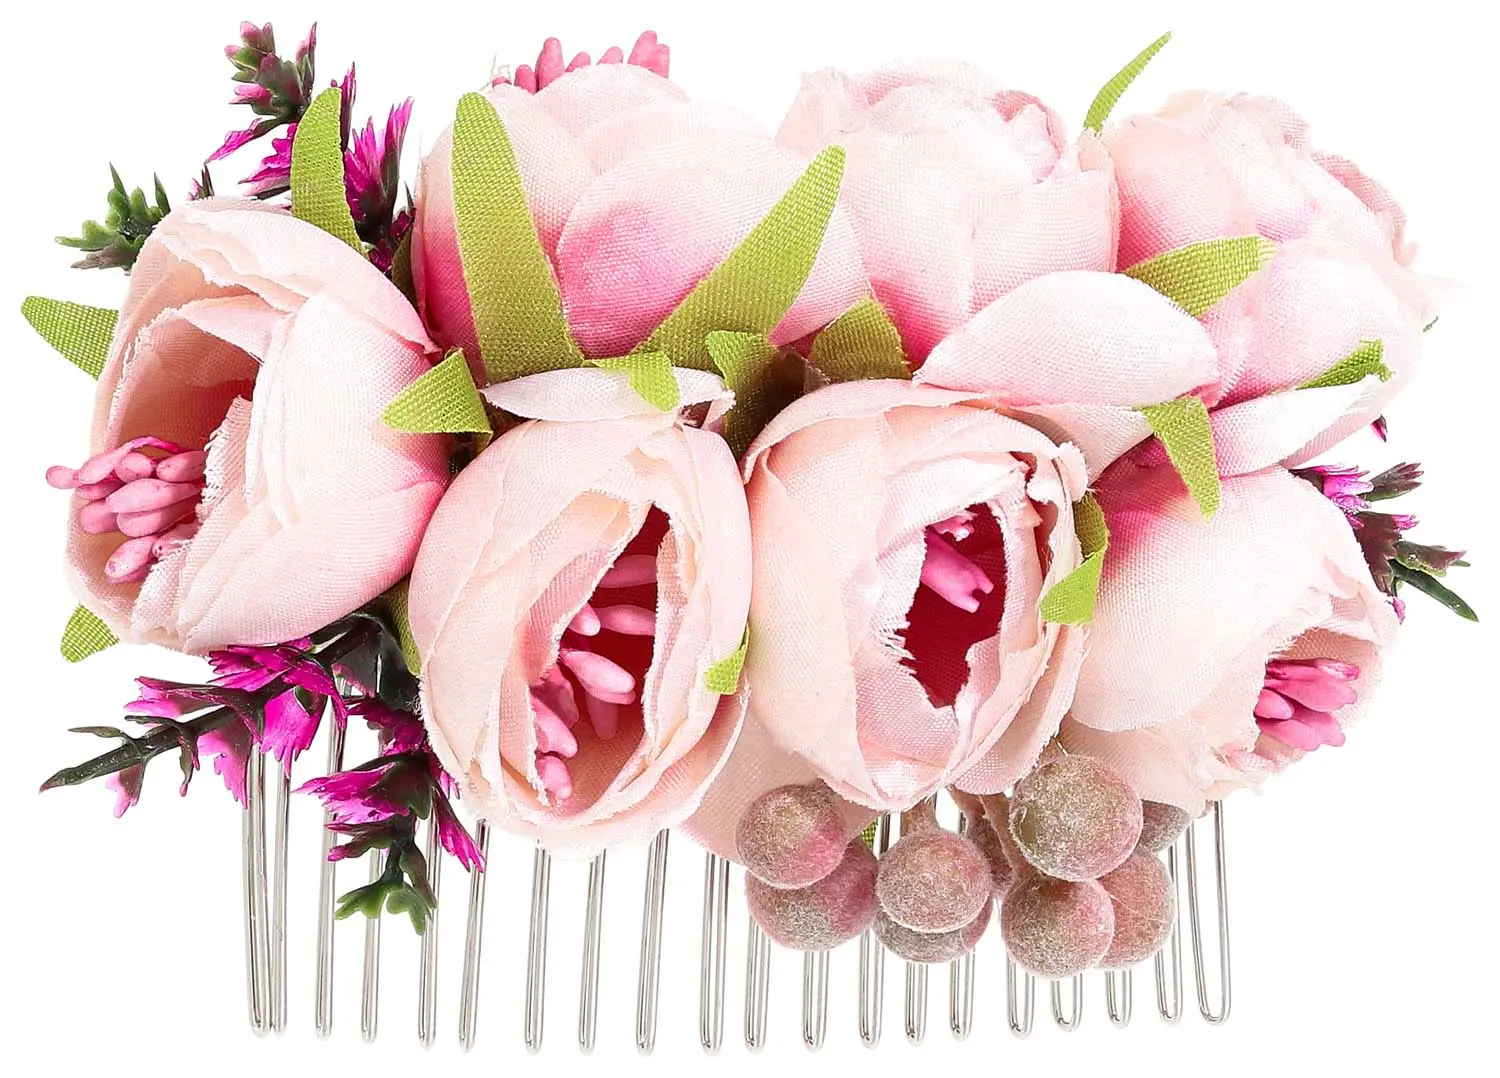 Peigne - Romantic Flower